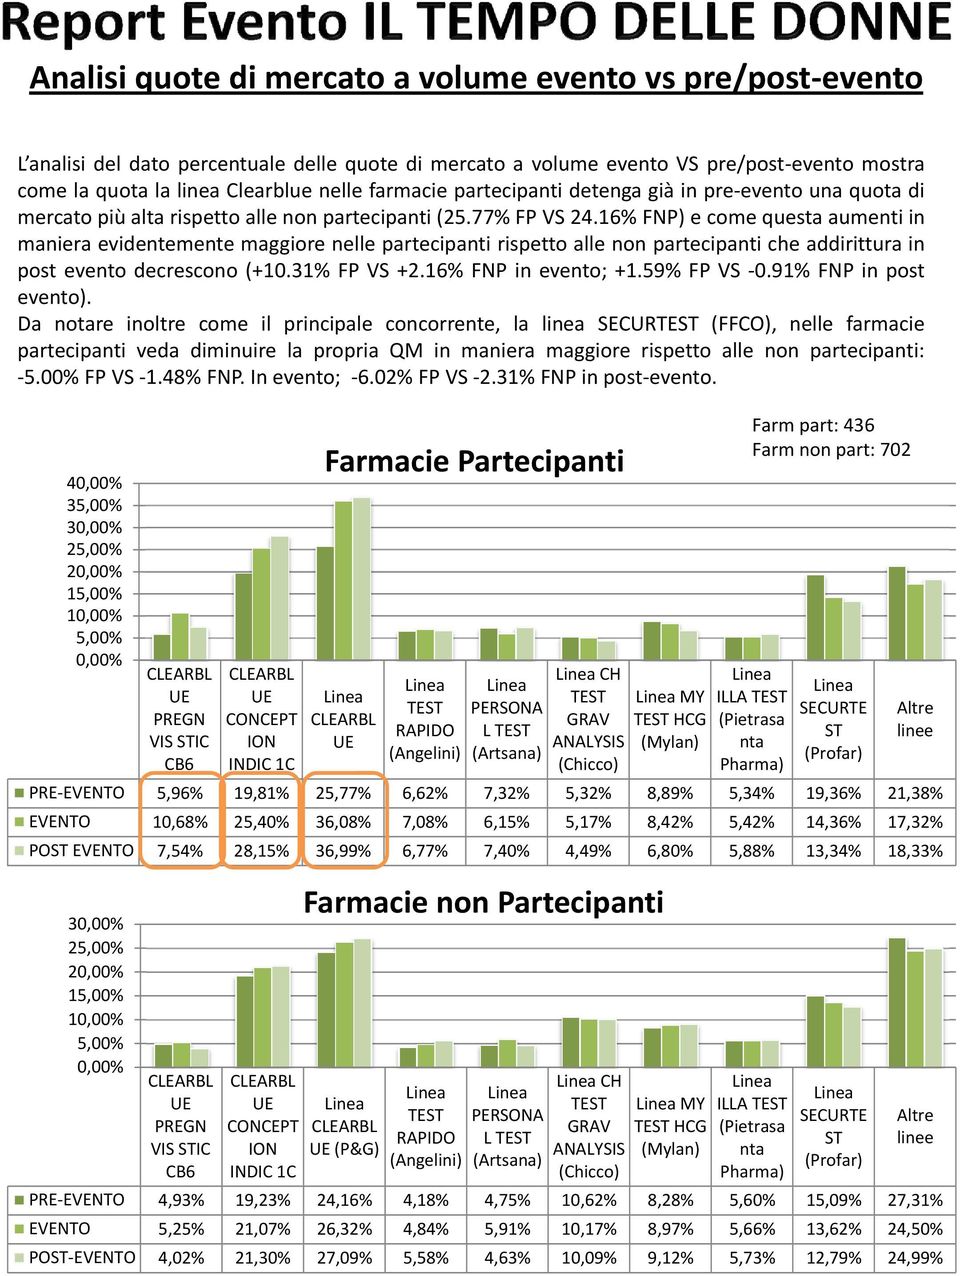 16% FNP) e come questa aumenti in maniera evidentemente maggiore nelle partecipanti rispetto alle non partecipanti che addirittura in post evento decrescono (+10.31% FP VS +2.16% FNP in evento; +1.